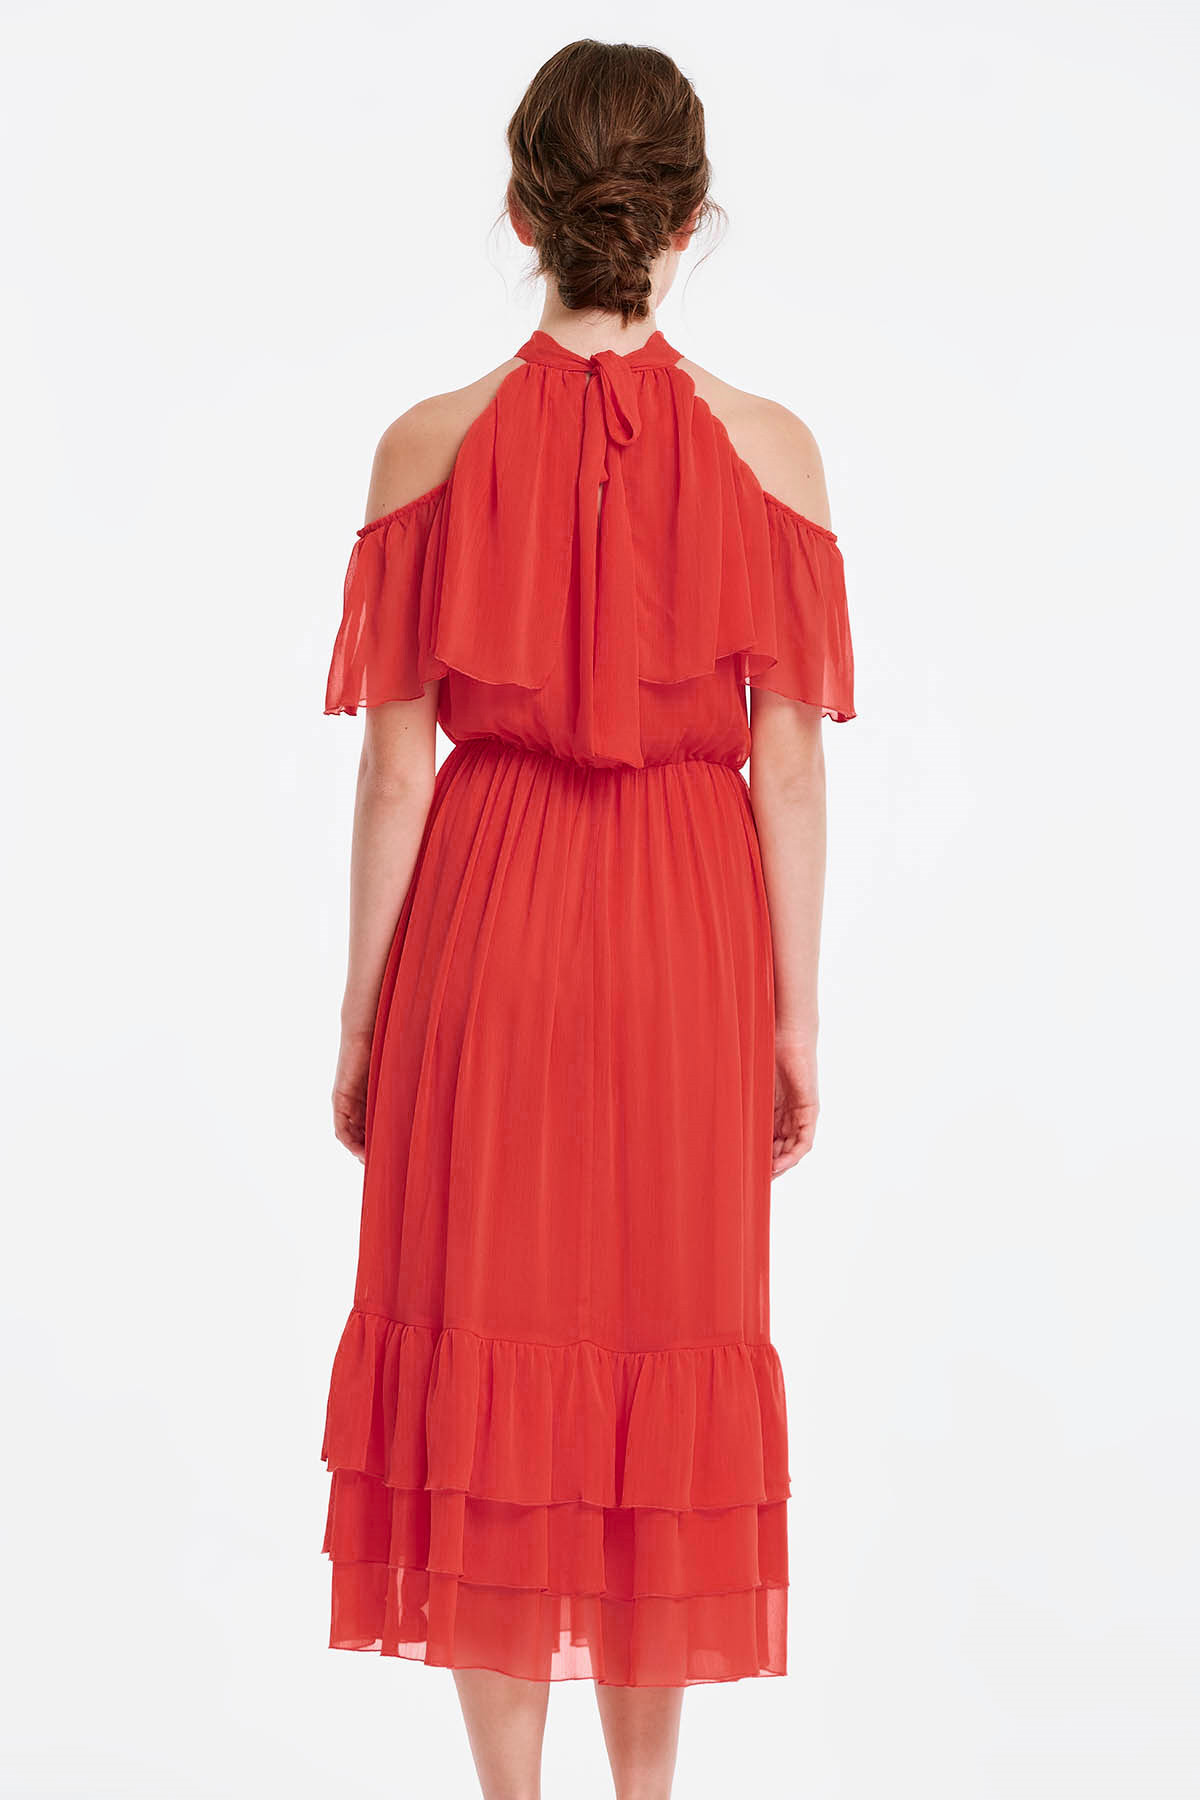 Червона сукня з воланами та відкритими плечима, фото 2